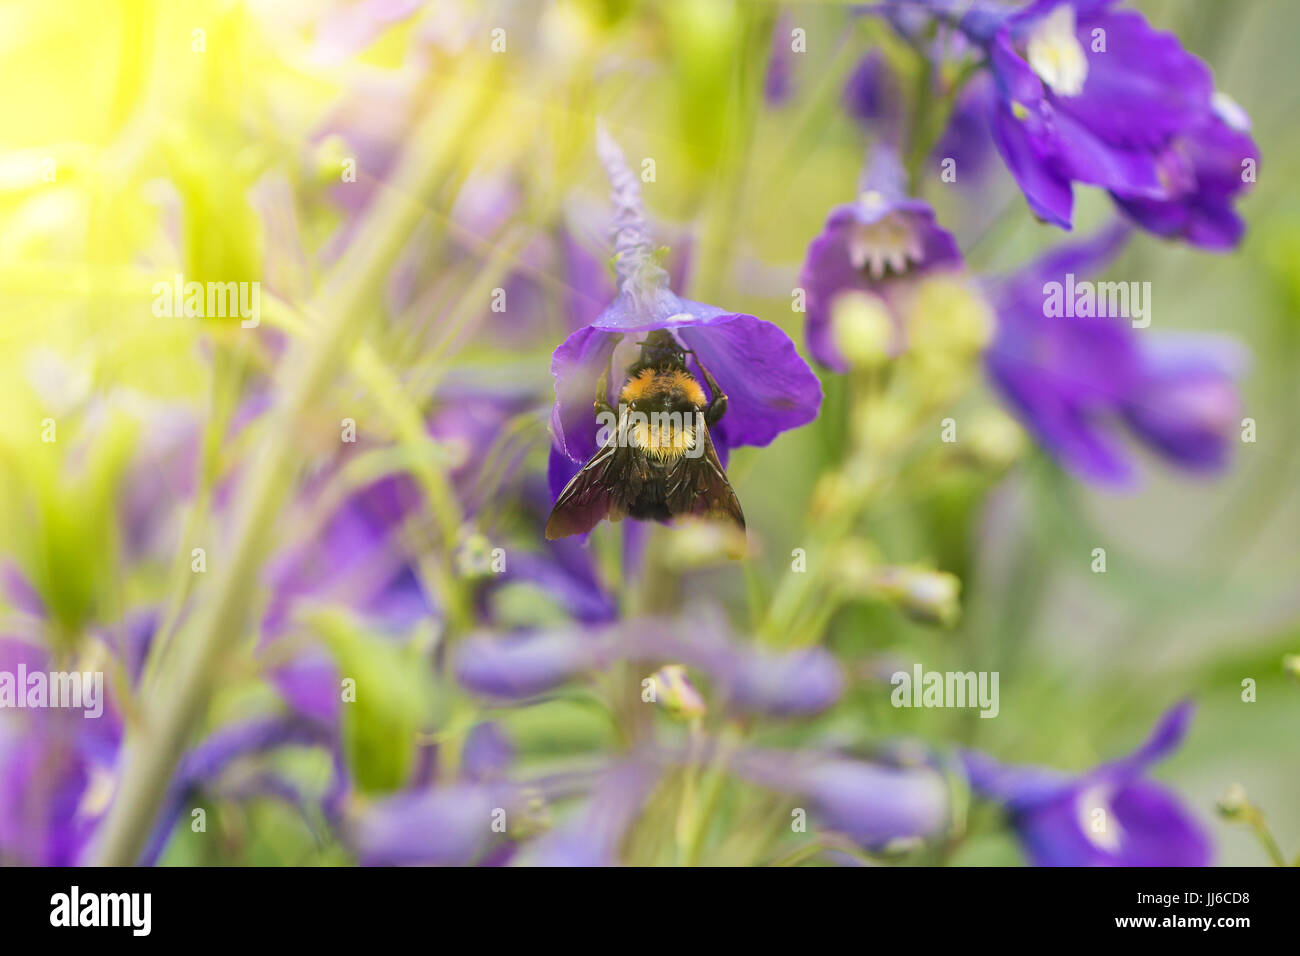 Eine Makroaufnahme einer Hummel, sammeln von Pollen von einer wunderschönen Blume. Stockfoto